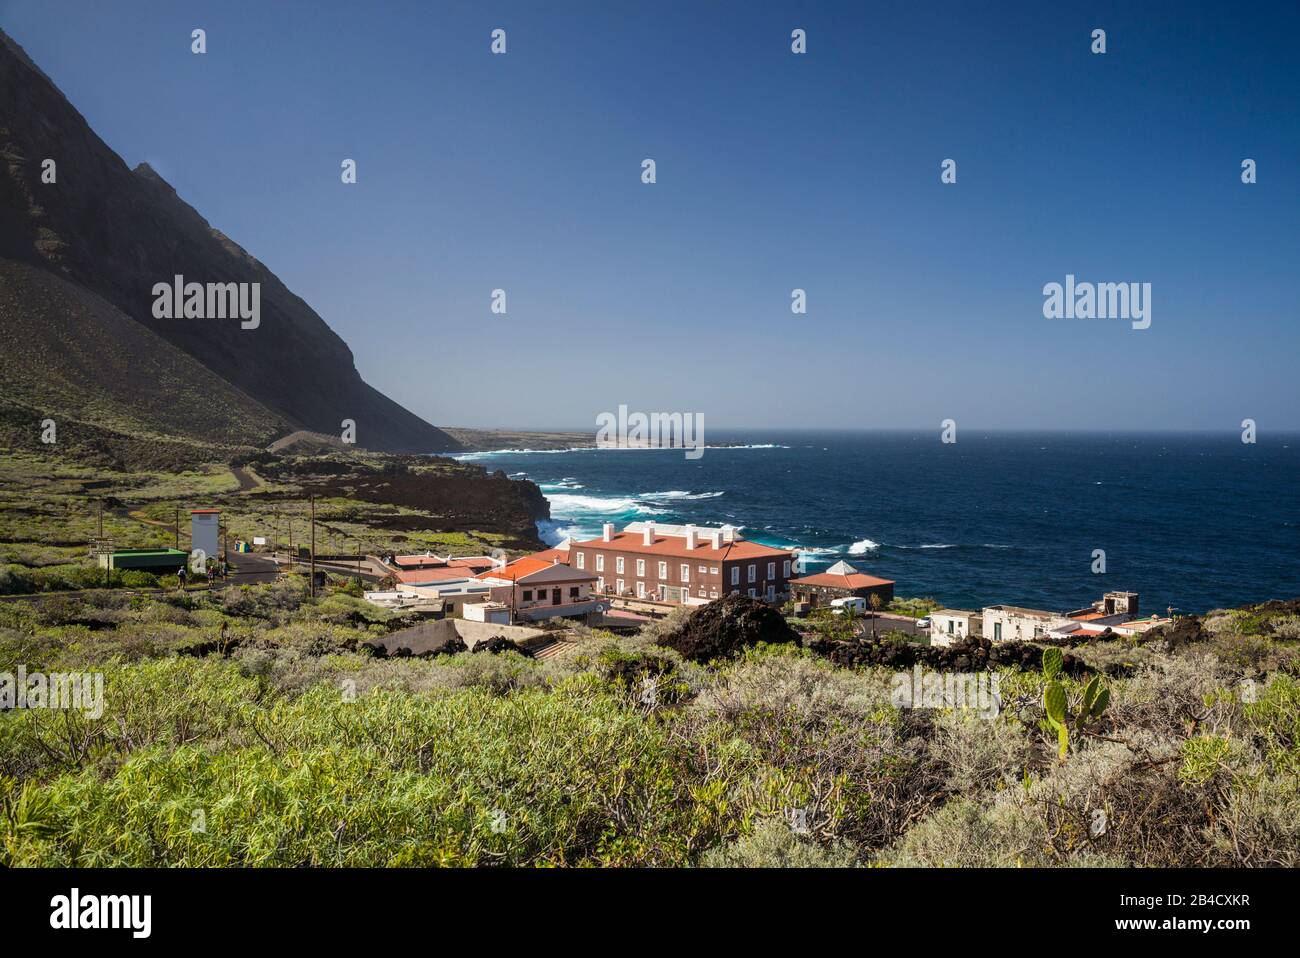 Spain, Canary Islands, El Hierro Island, Pozo de la Salud, elelvated view of the Hotel Pozo de la Salud Stock Photo